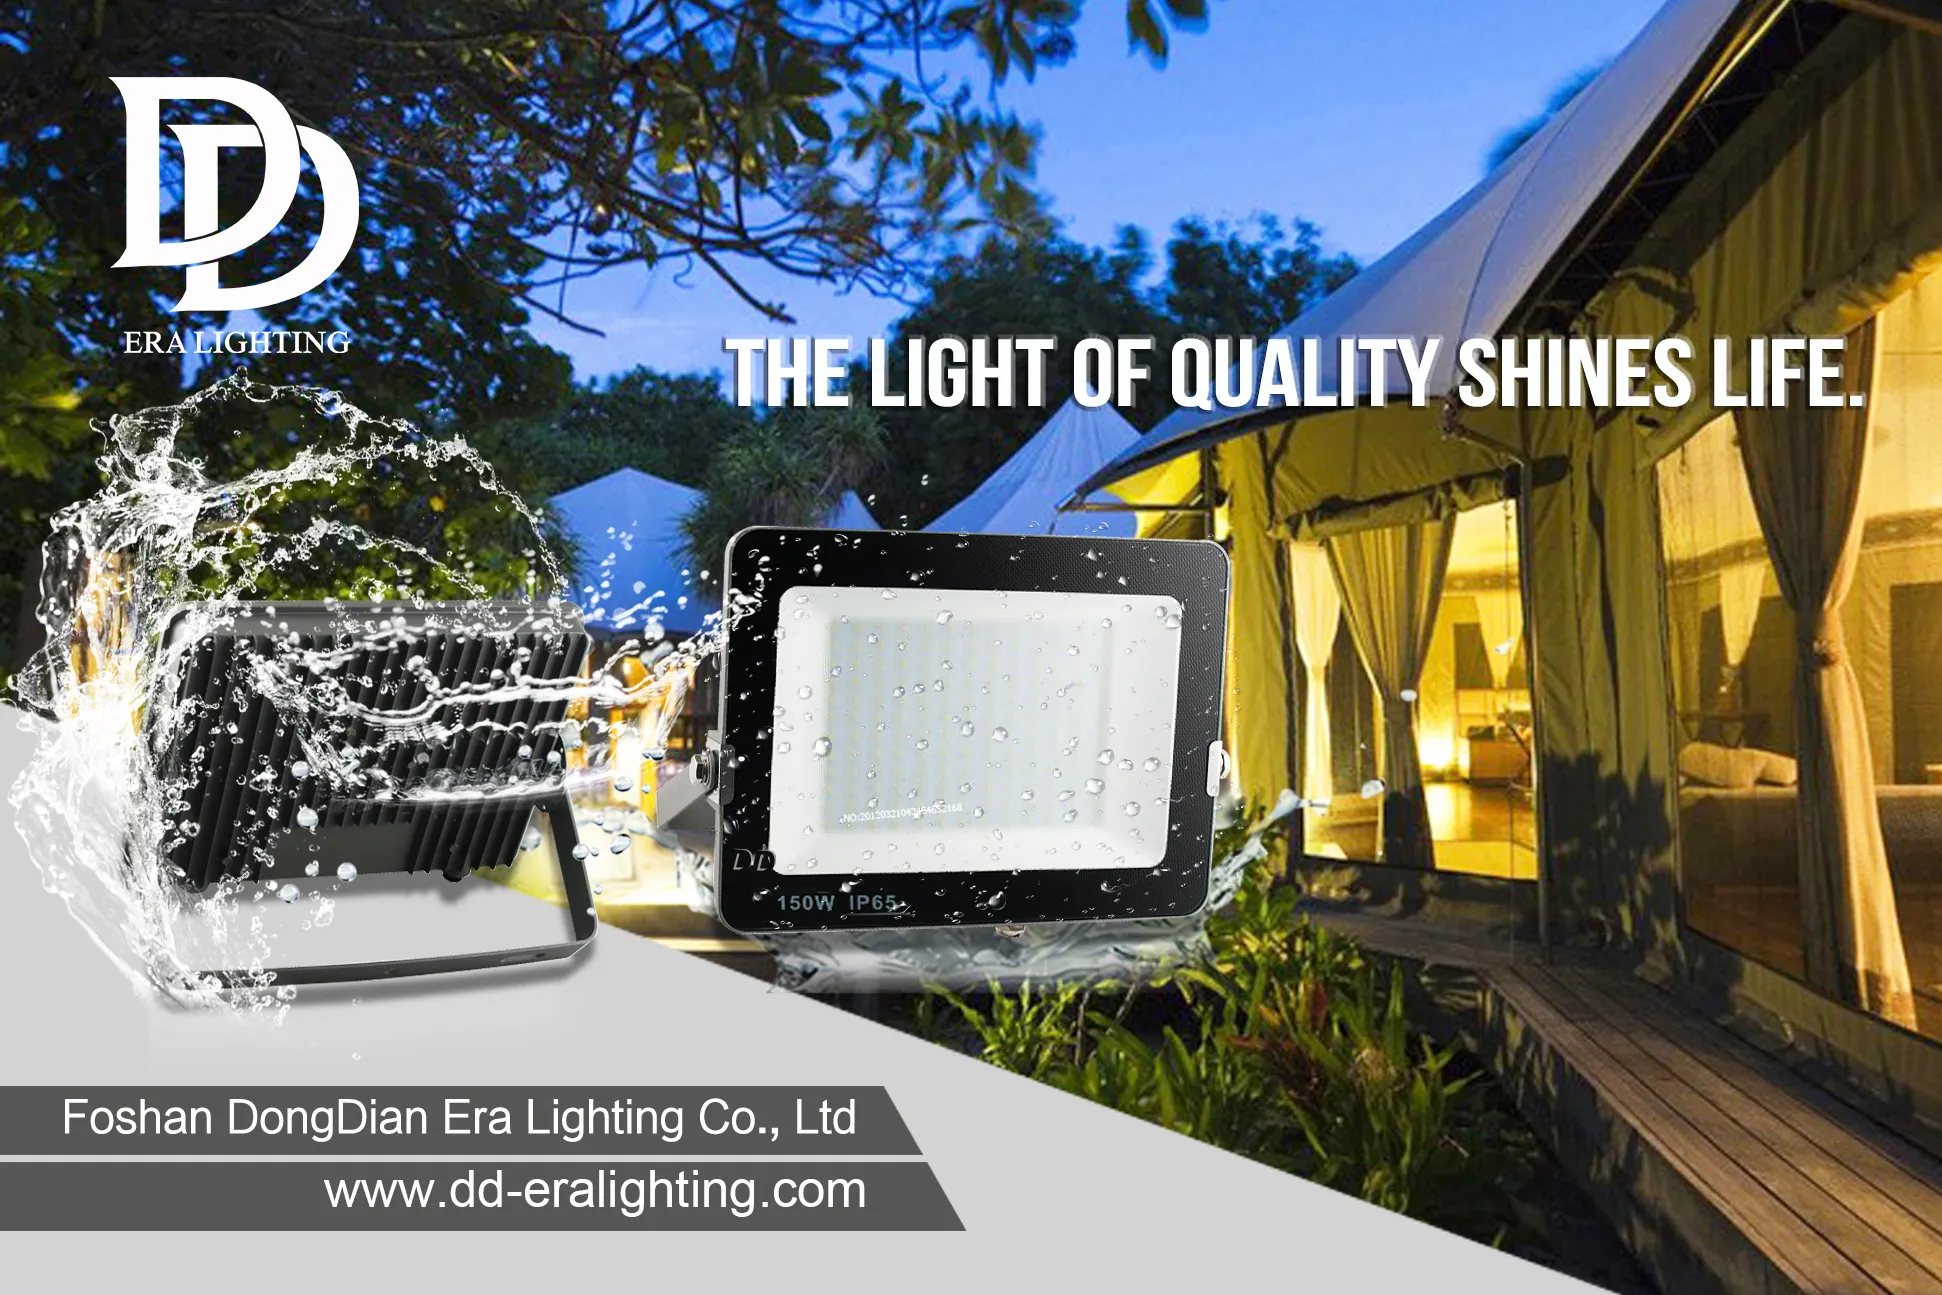 đèn pha | Ring mở rộng hệ thống chiếu sáng thông minh với bóng đèn năng lượng mặt trời và bóng đèn trong nhà